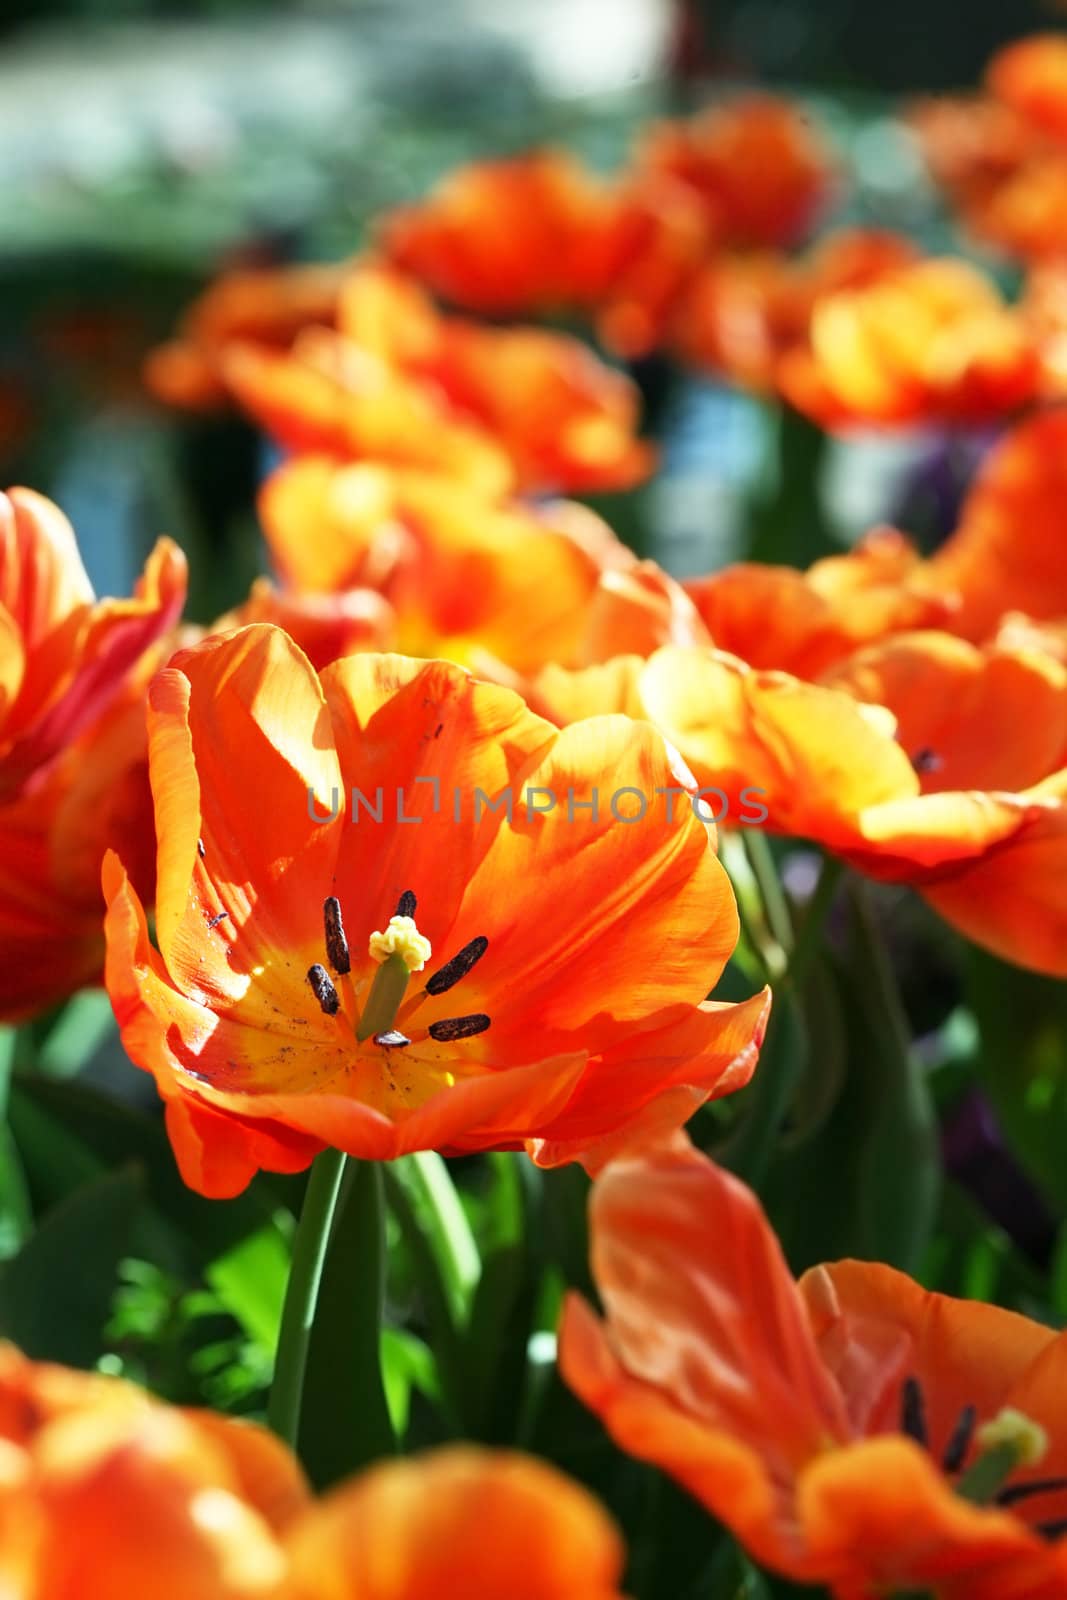 Orange tulips in summer sunshine by jarenwicklund